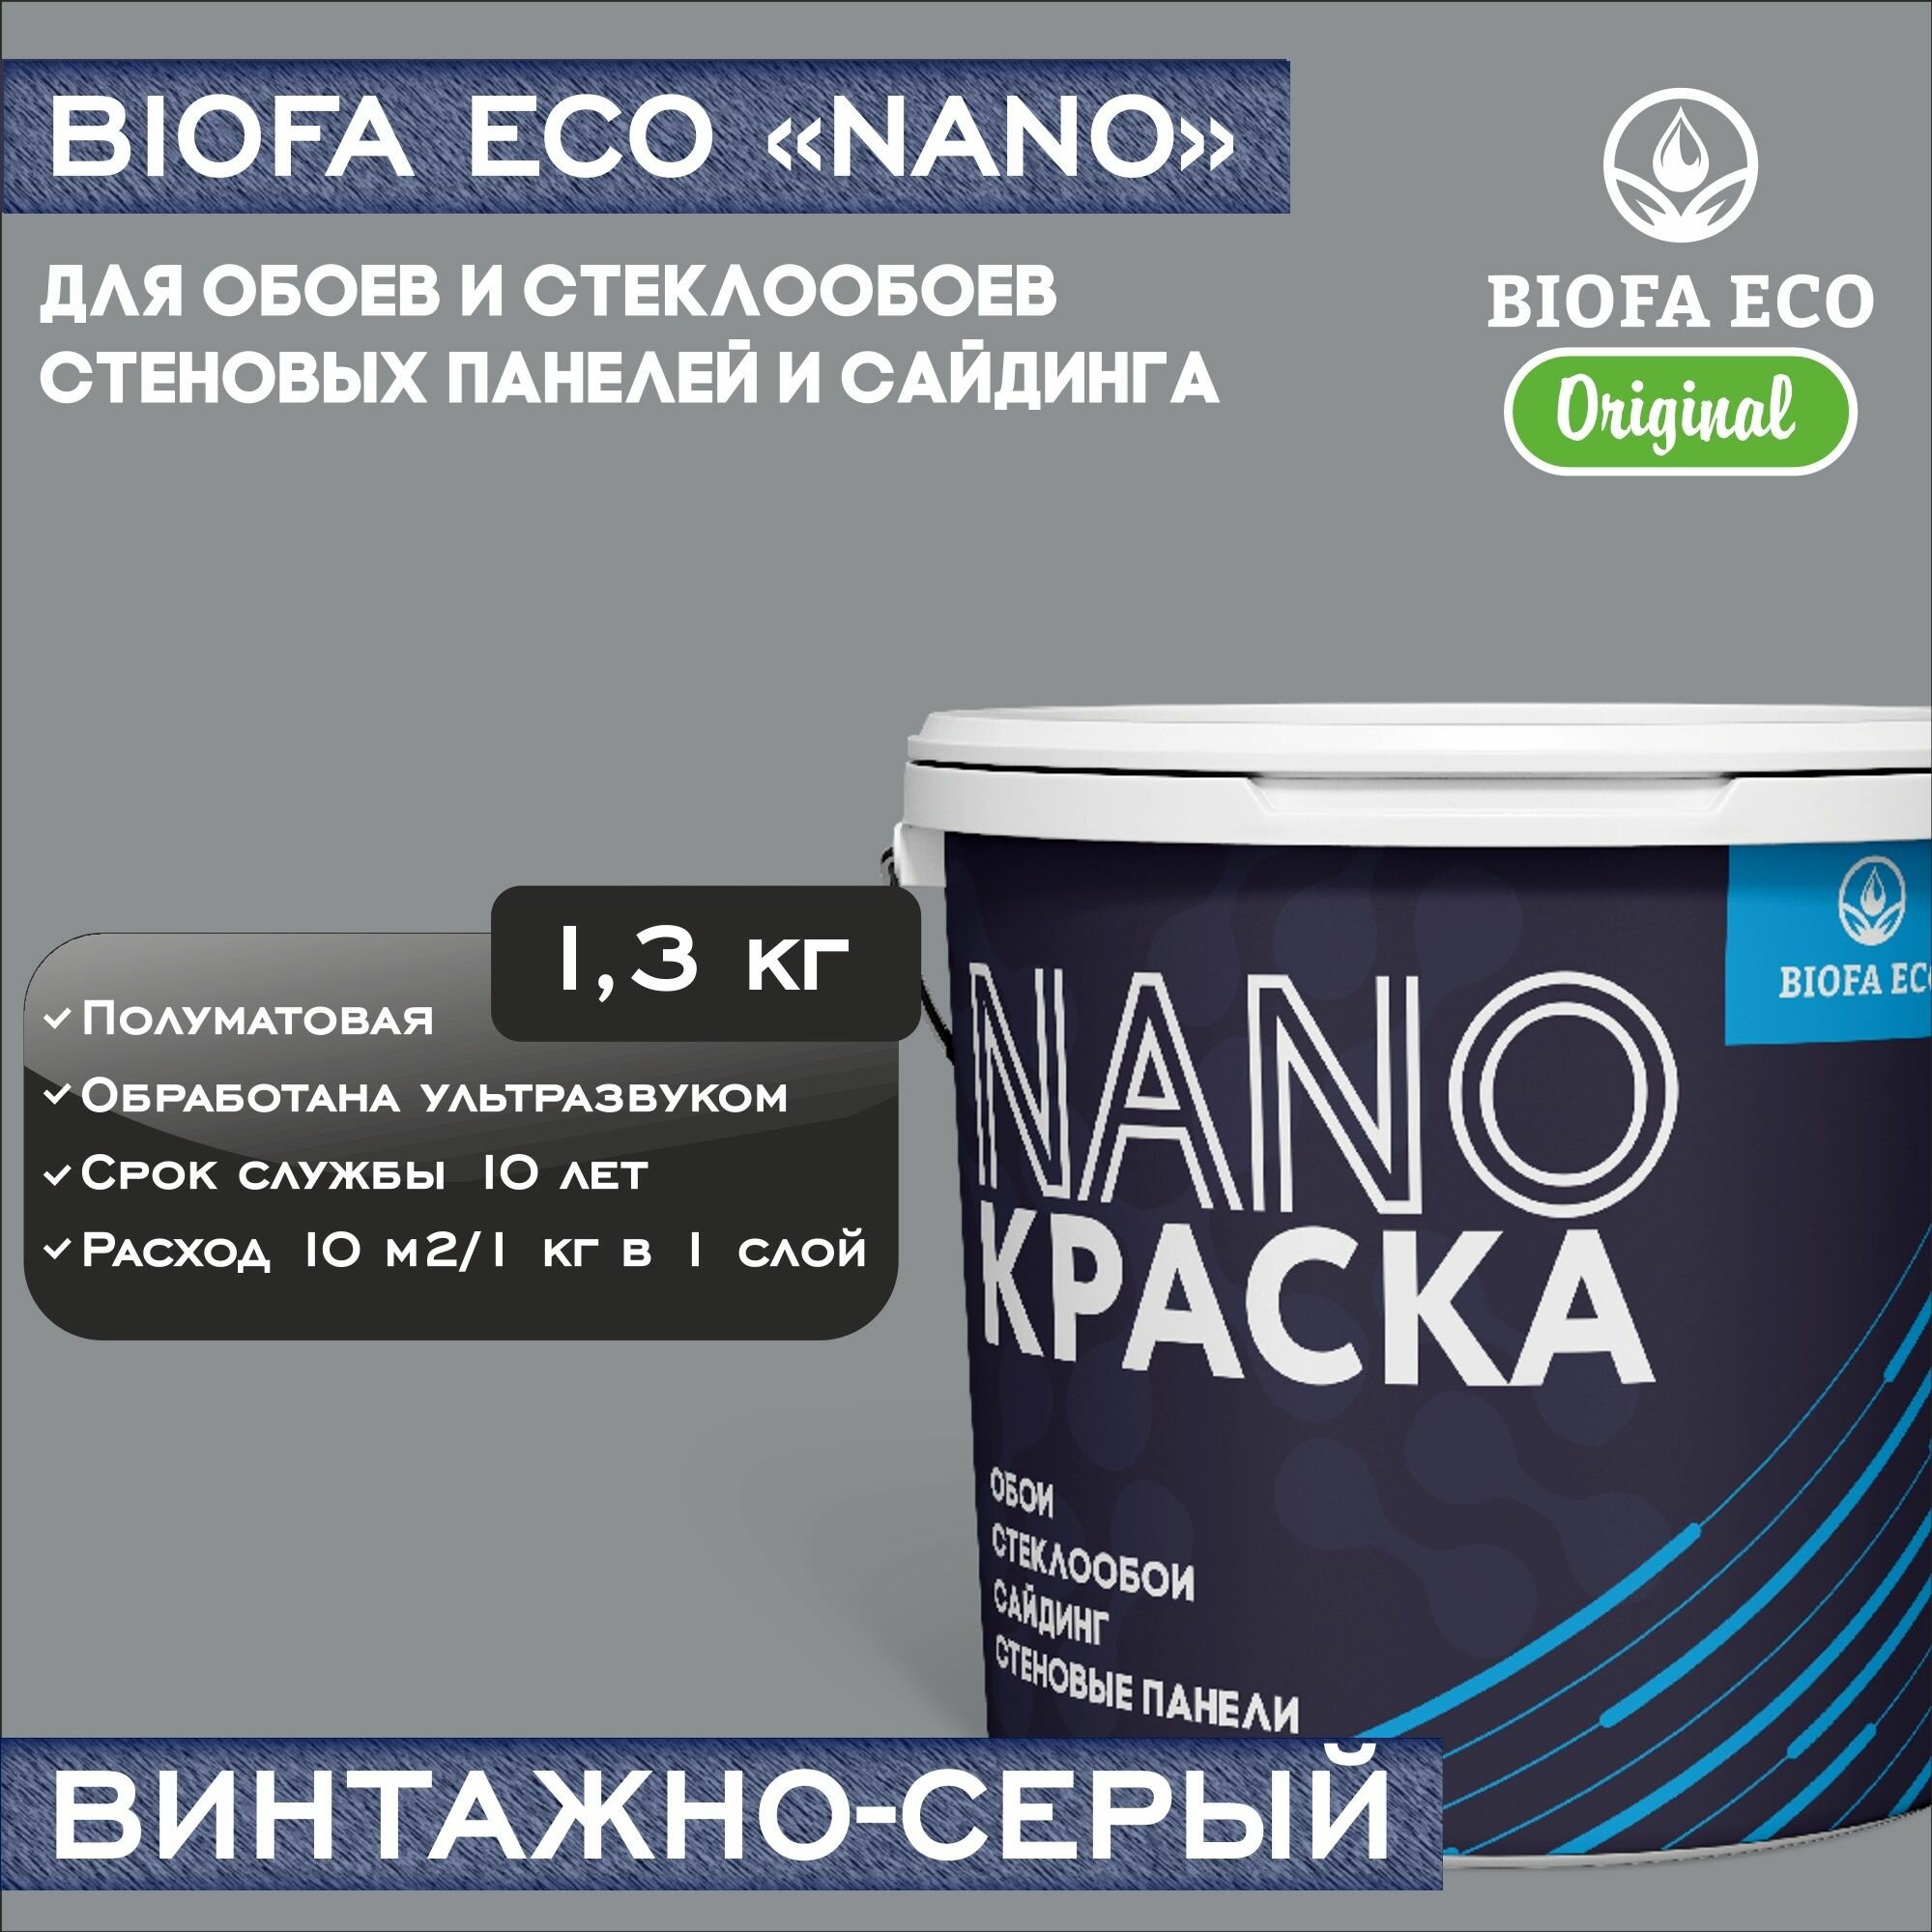 Краска BIOFA ECO NANO для обоев, стеклообоев, стеновых панелей и сайдинга, адгезионная, полуматовая, цвет винтажно-серый, 1,3 кг